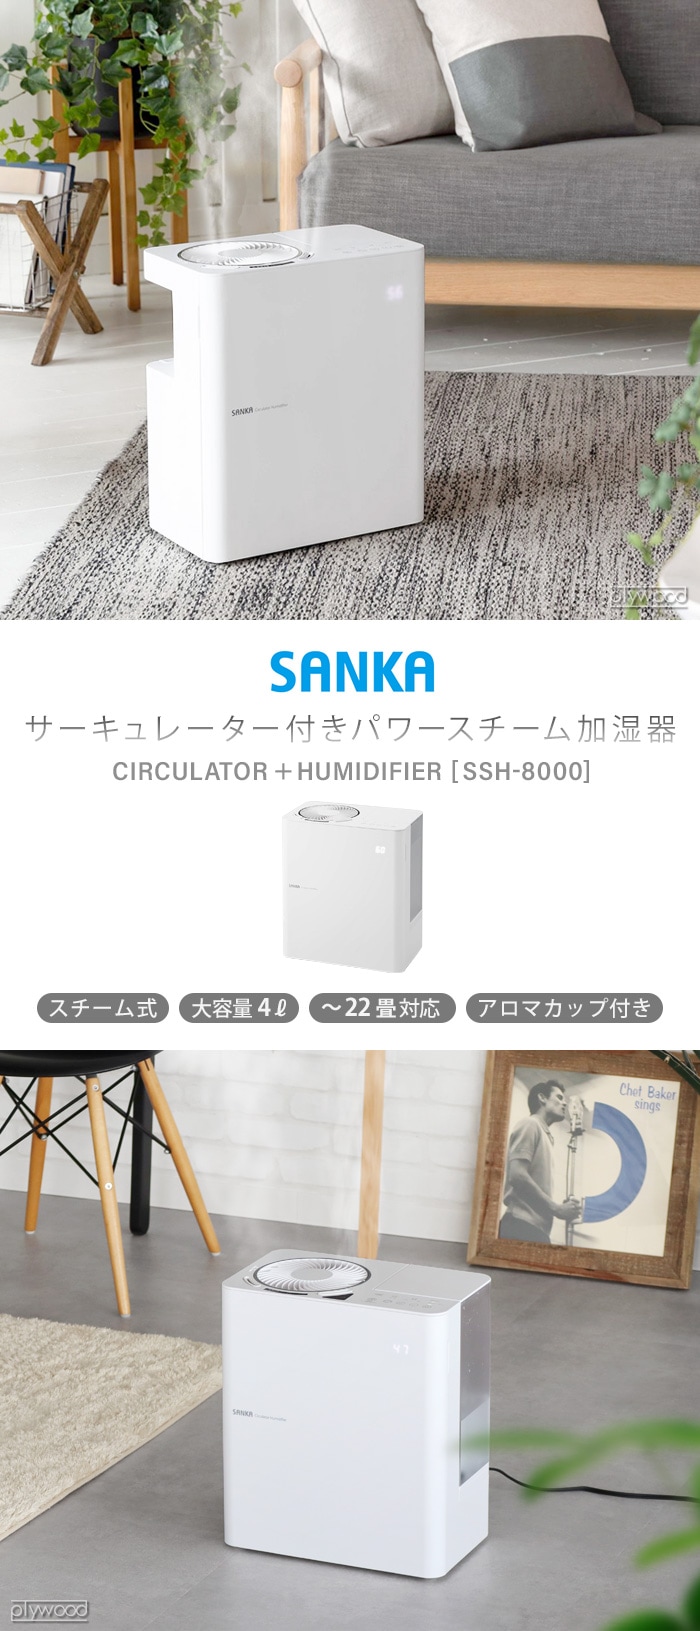 SANKA サーキュレーター付きパワースチーム加湿器 SSH-8000 